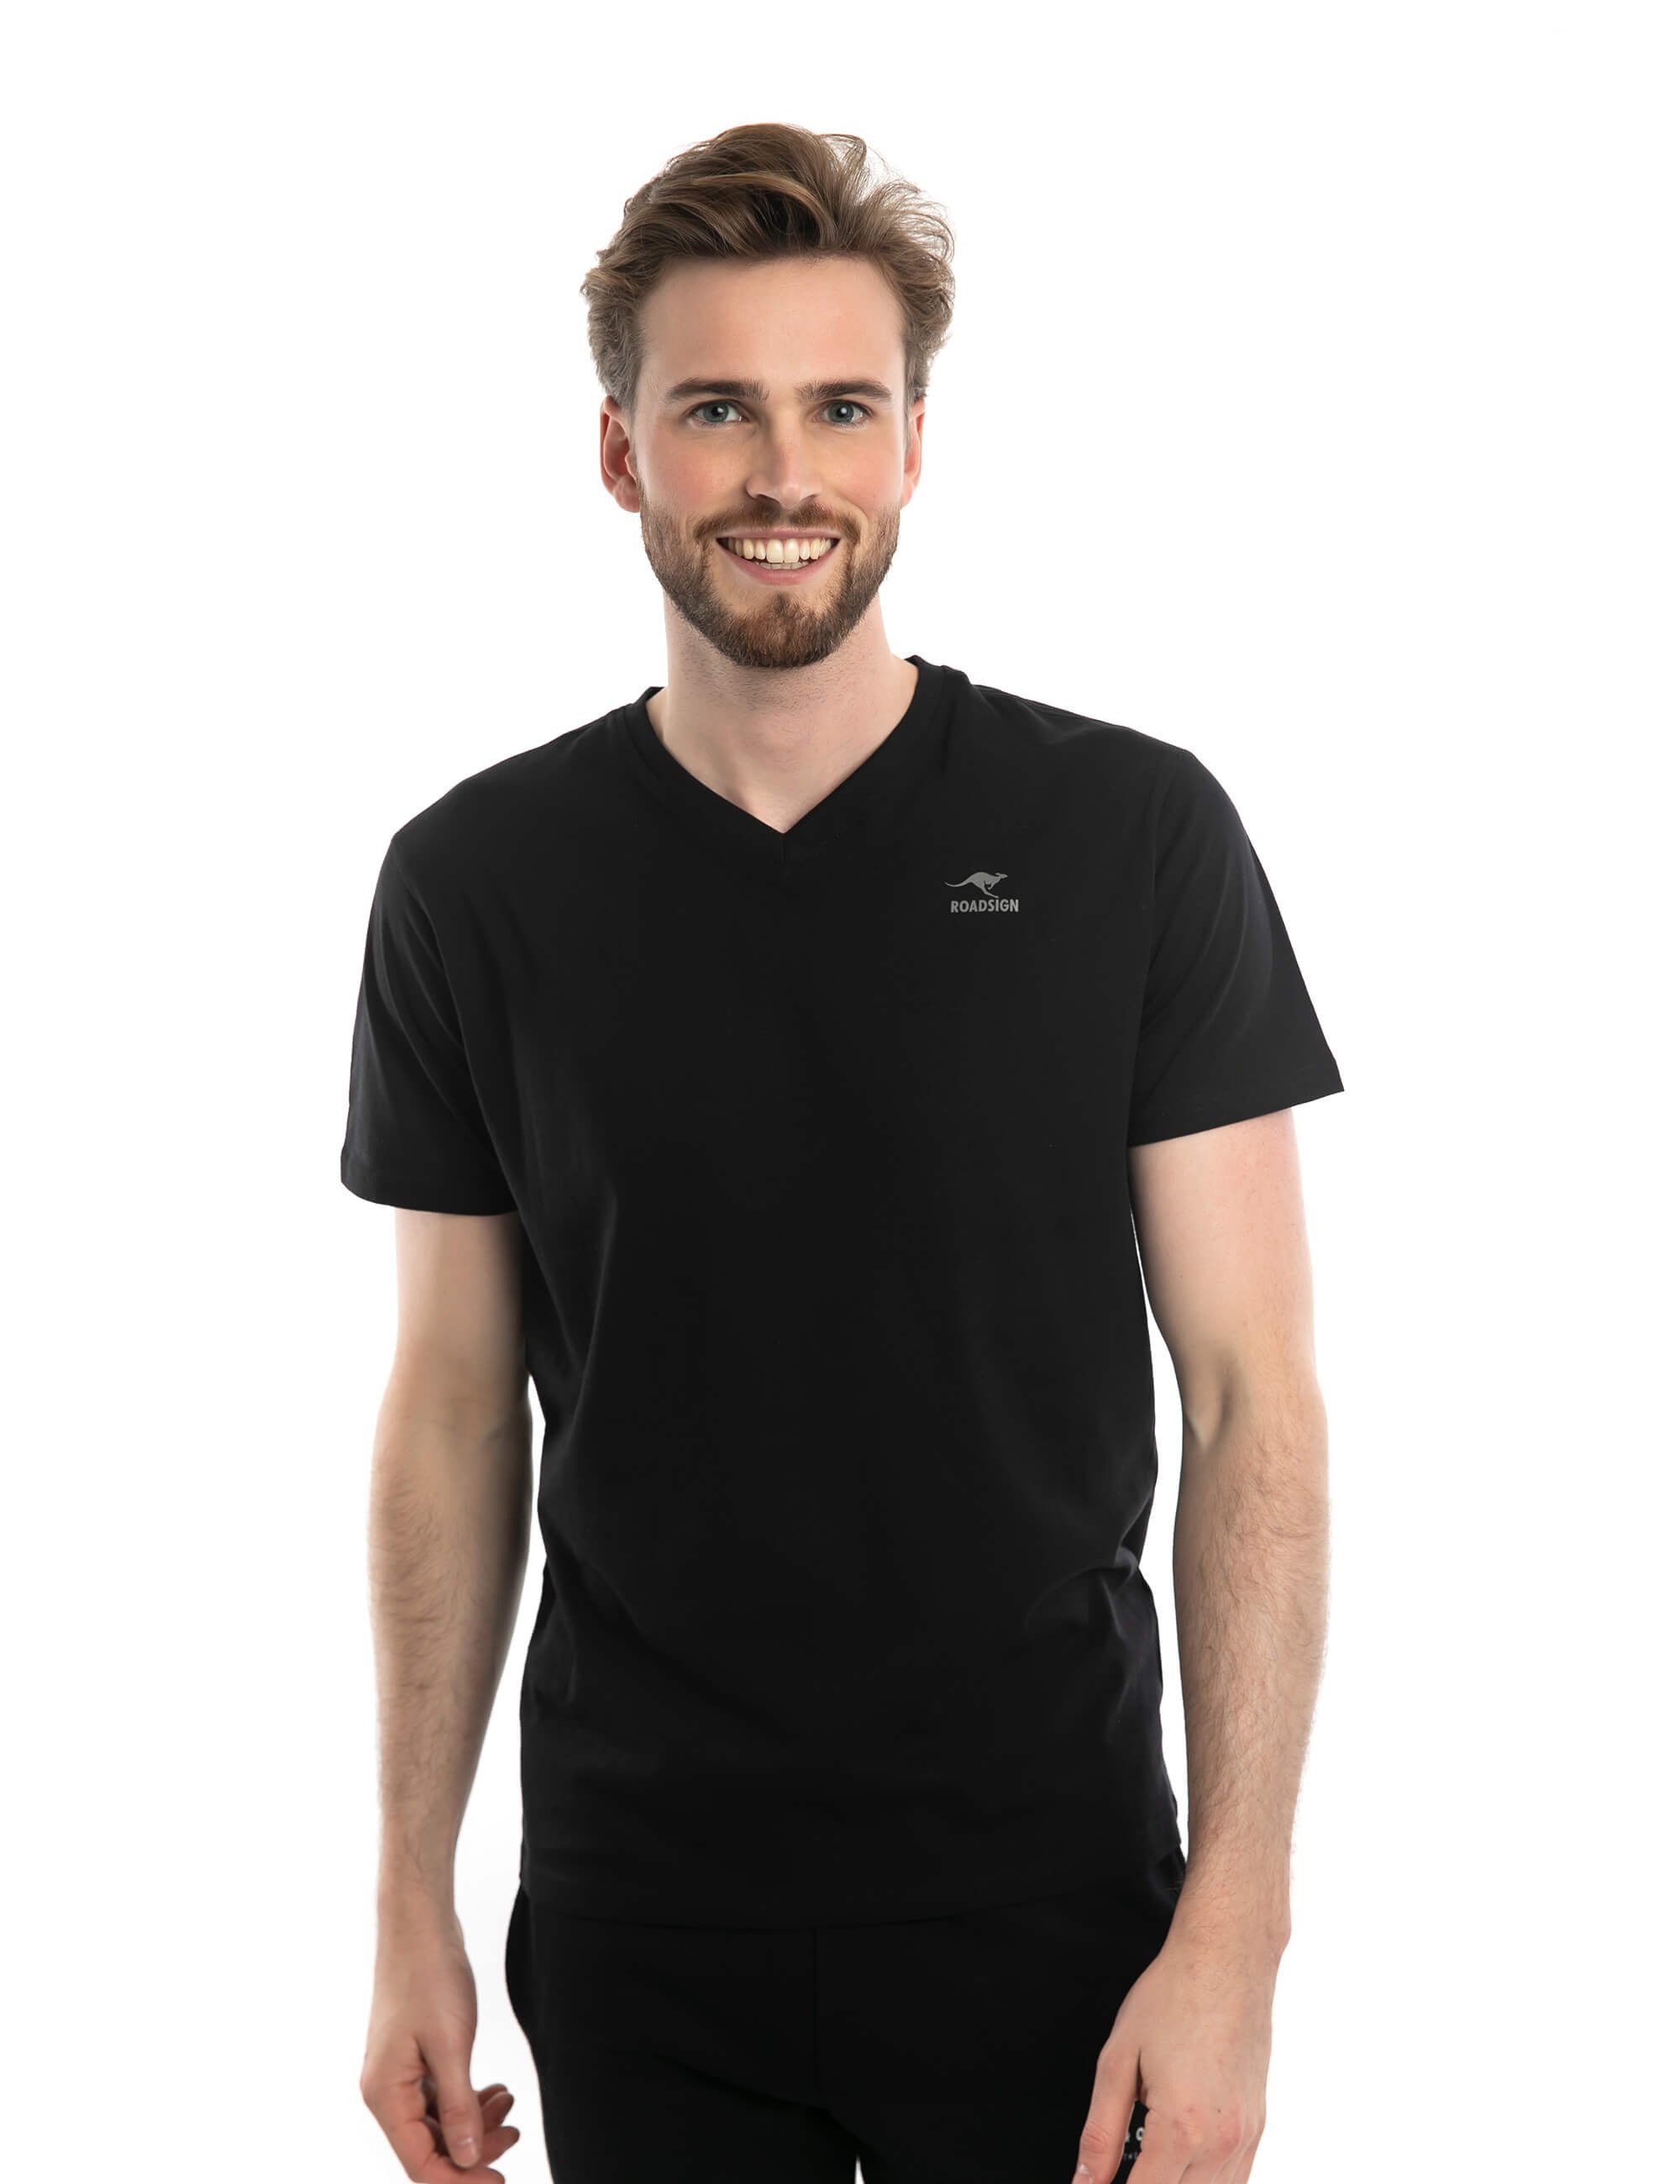 ROADSIGN australia T-Shirt Basic (Doppelpack, 2-tlg., 2er-Pack) mit V-Ausschnitt, 100% Baumwolle (2-er Pack) schwarz